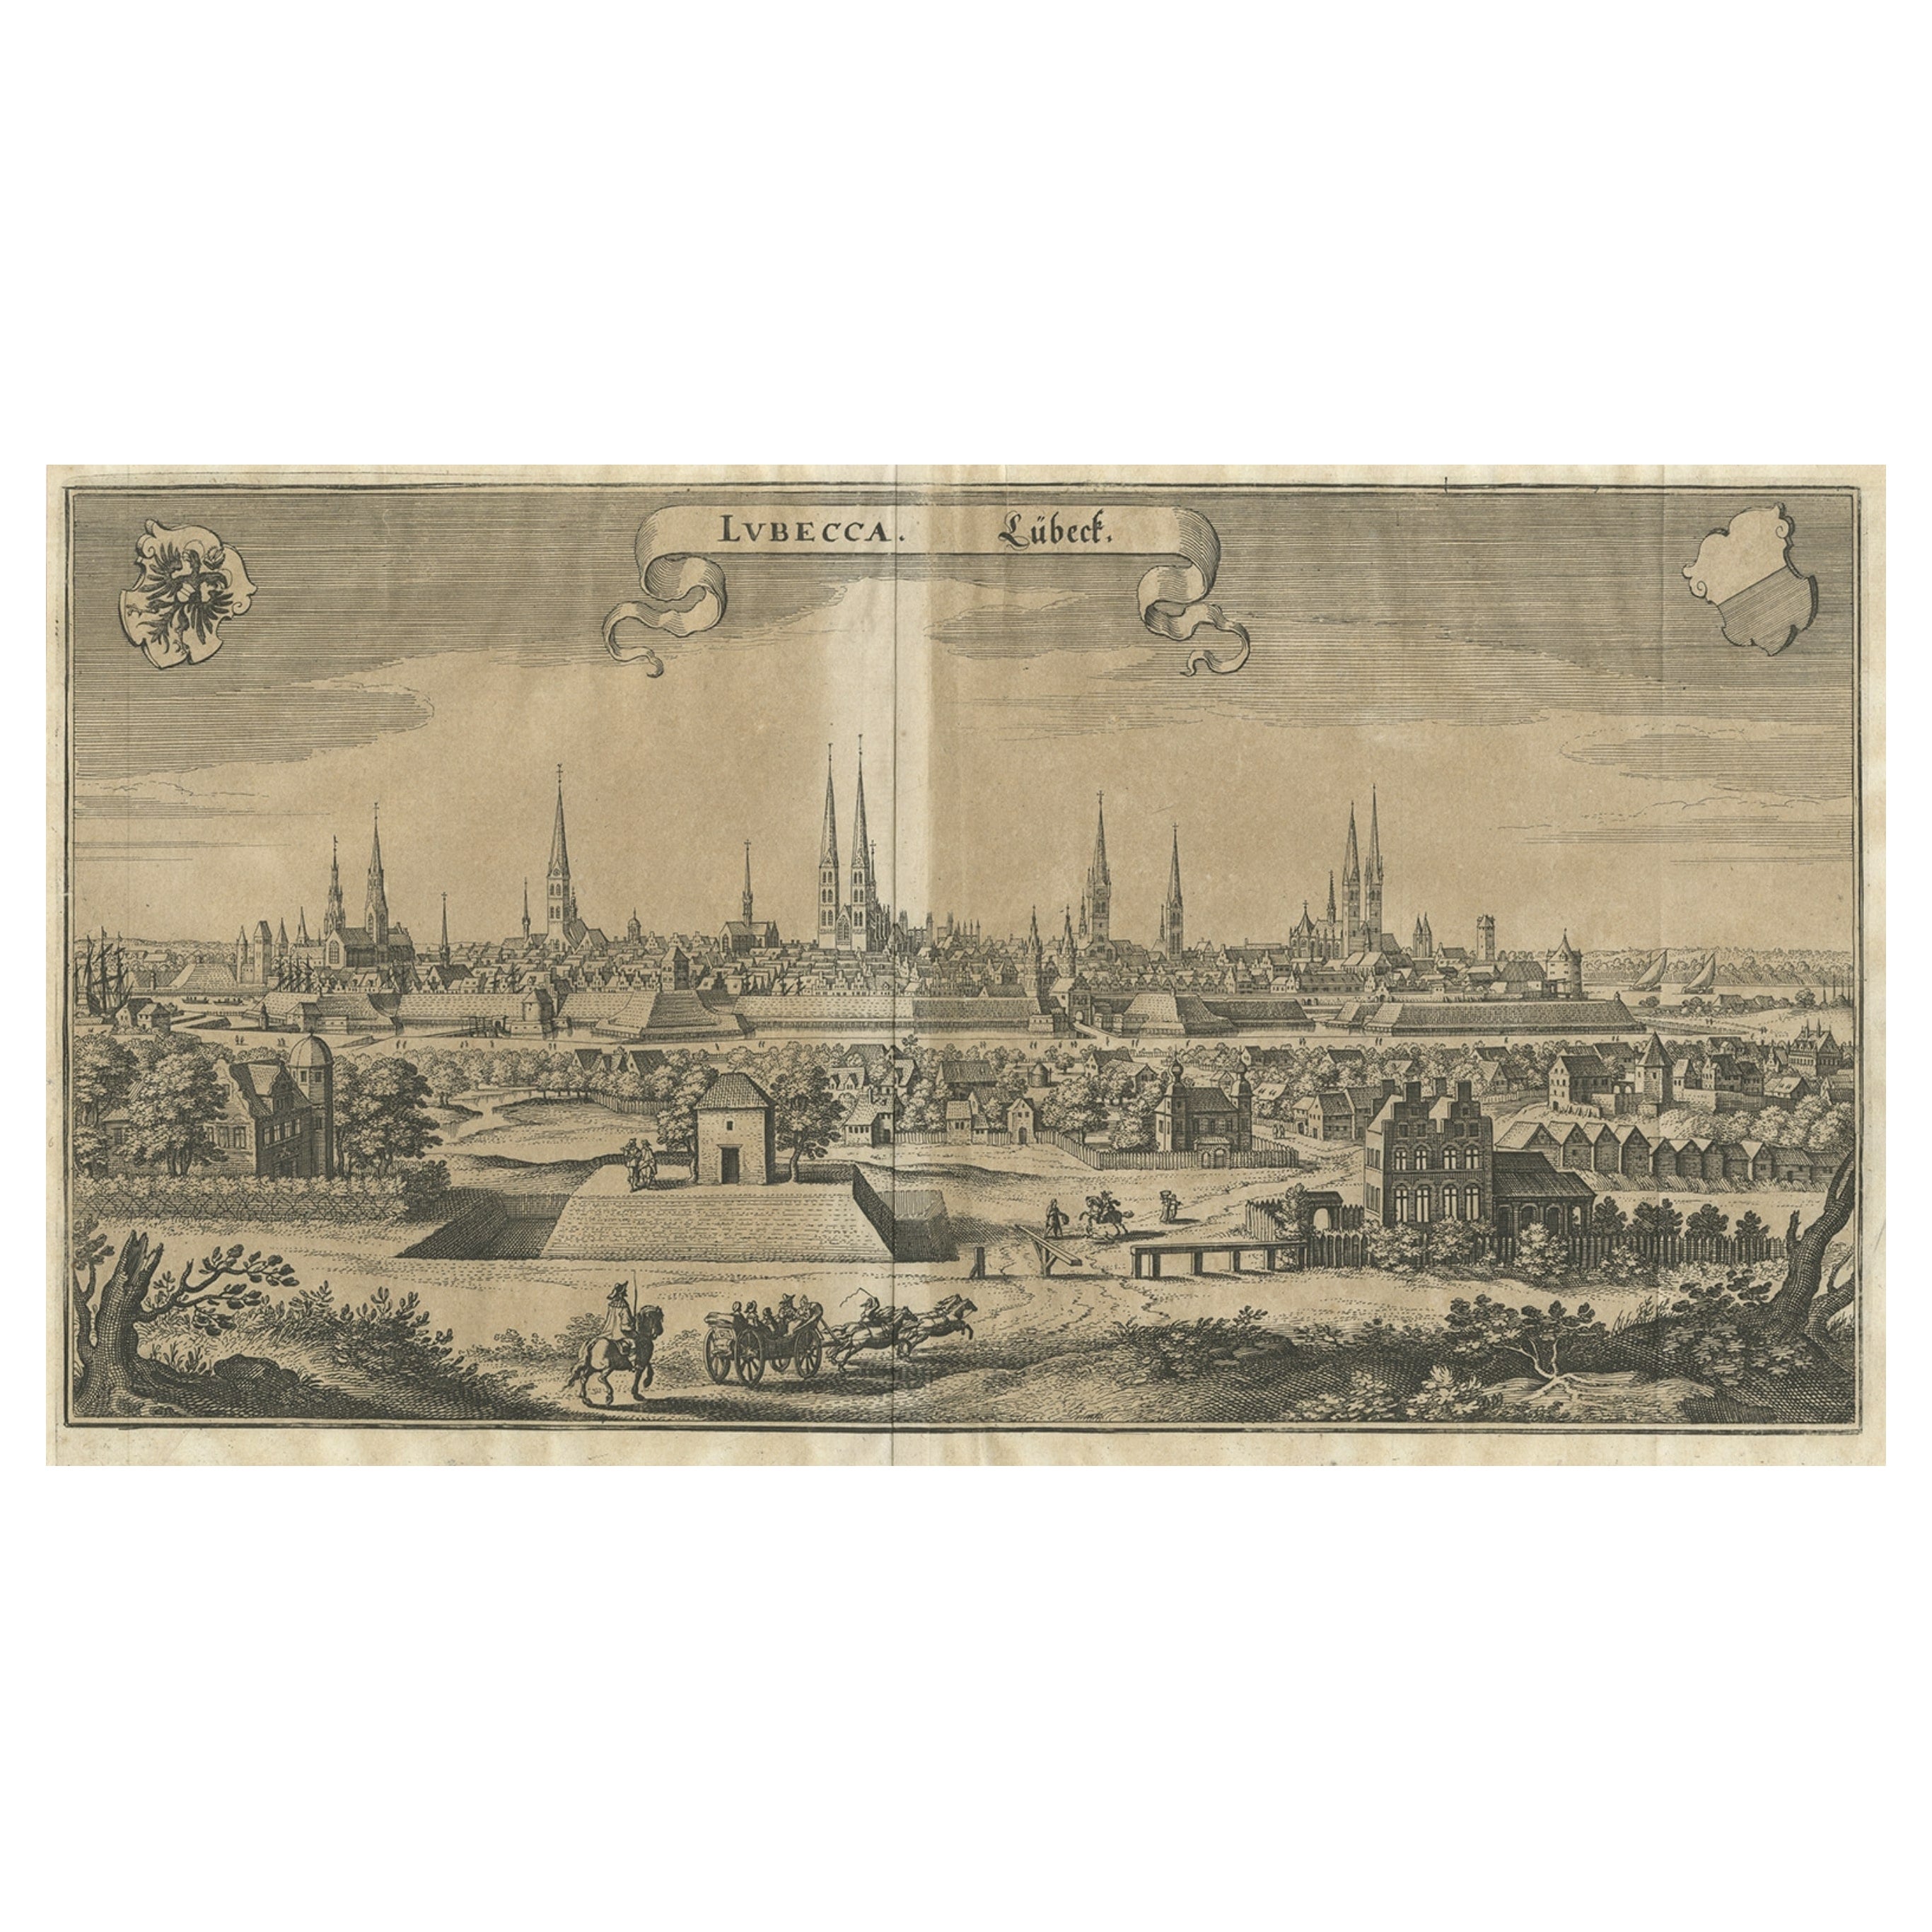 Antiker Druck der Hansestadt Lübeck in Norddeutschland von Merian, ca. 1650